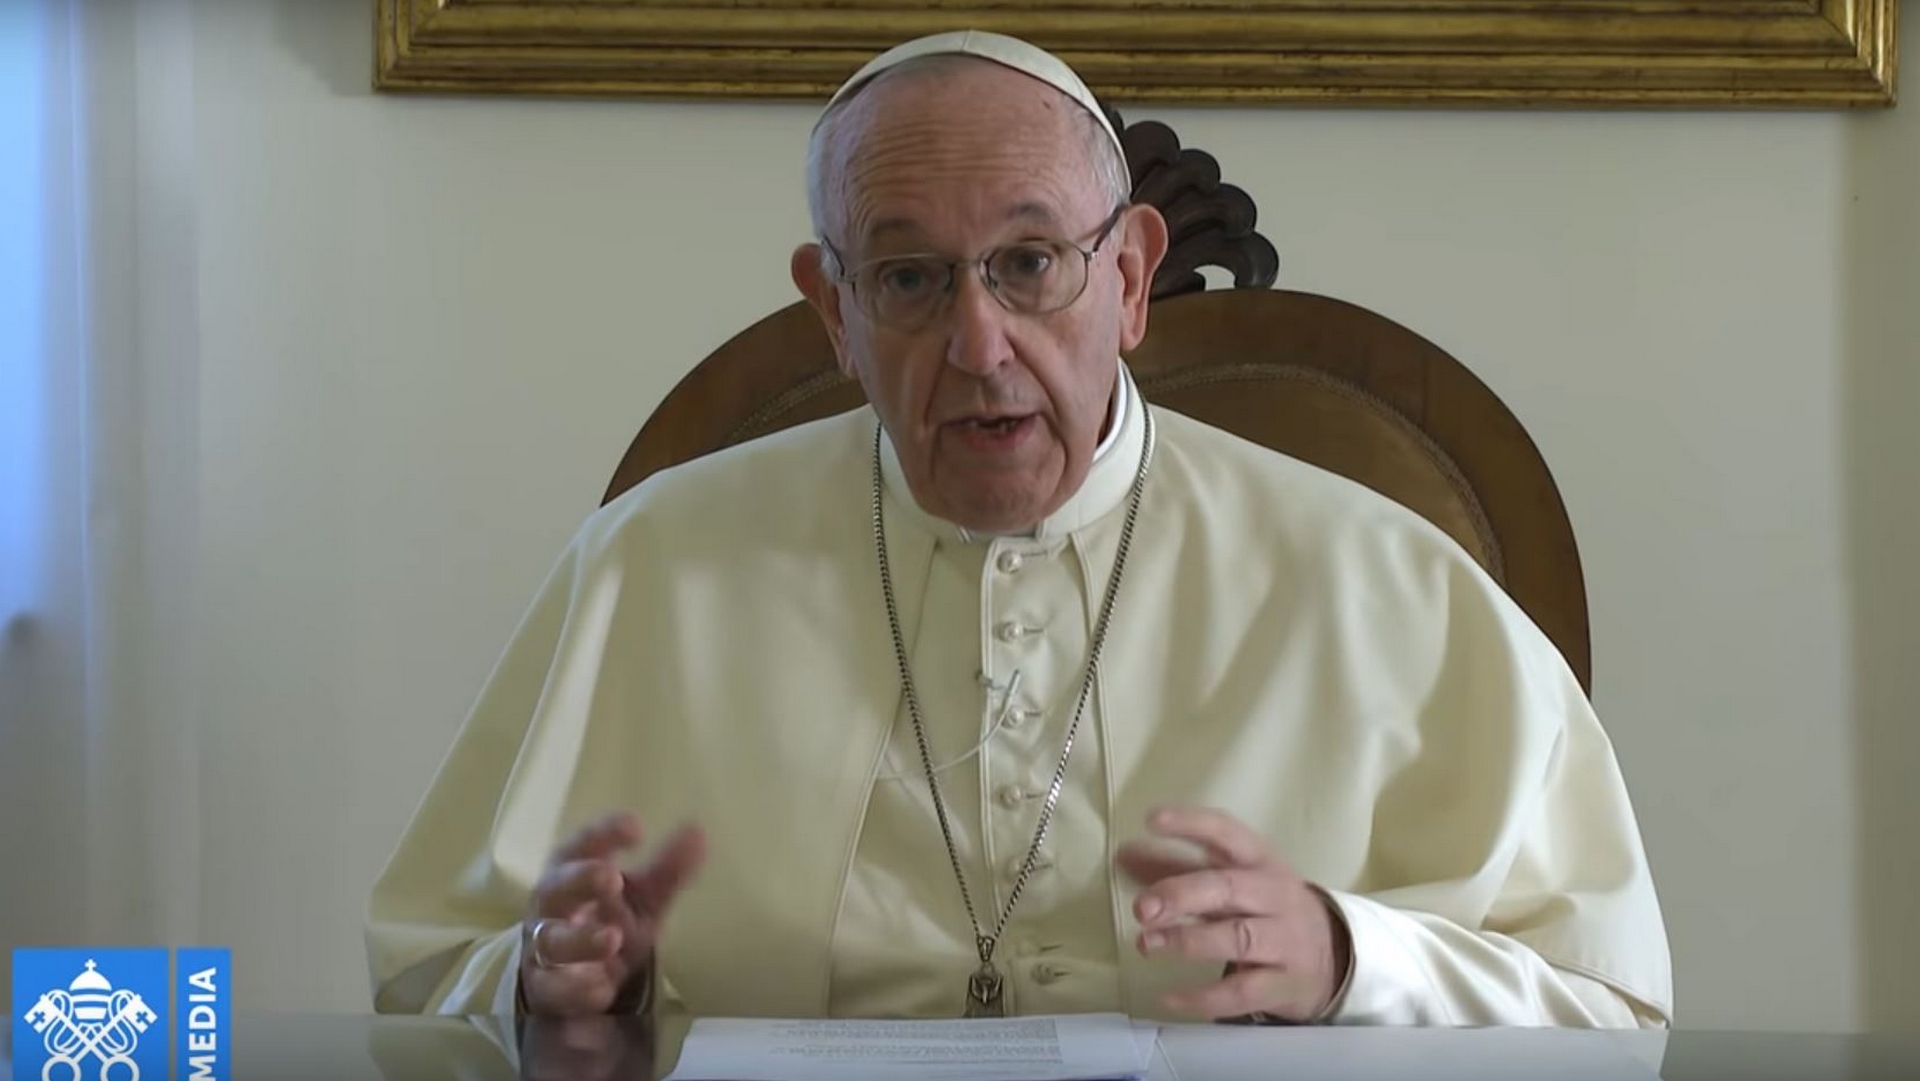 Le pape François s'est adressé aux journalistes et communicants, pour la Journée des communications sociales | capture d'écran / Vatican Media